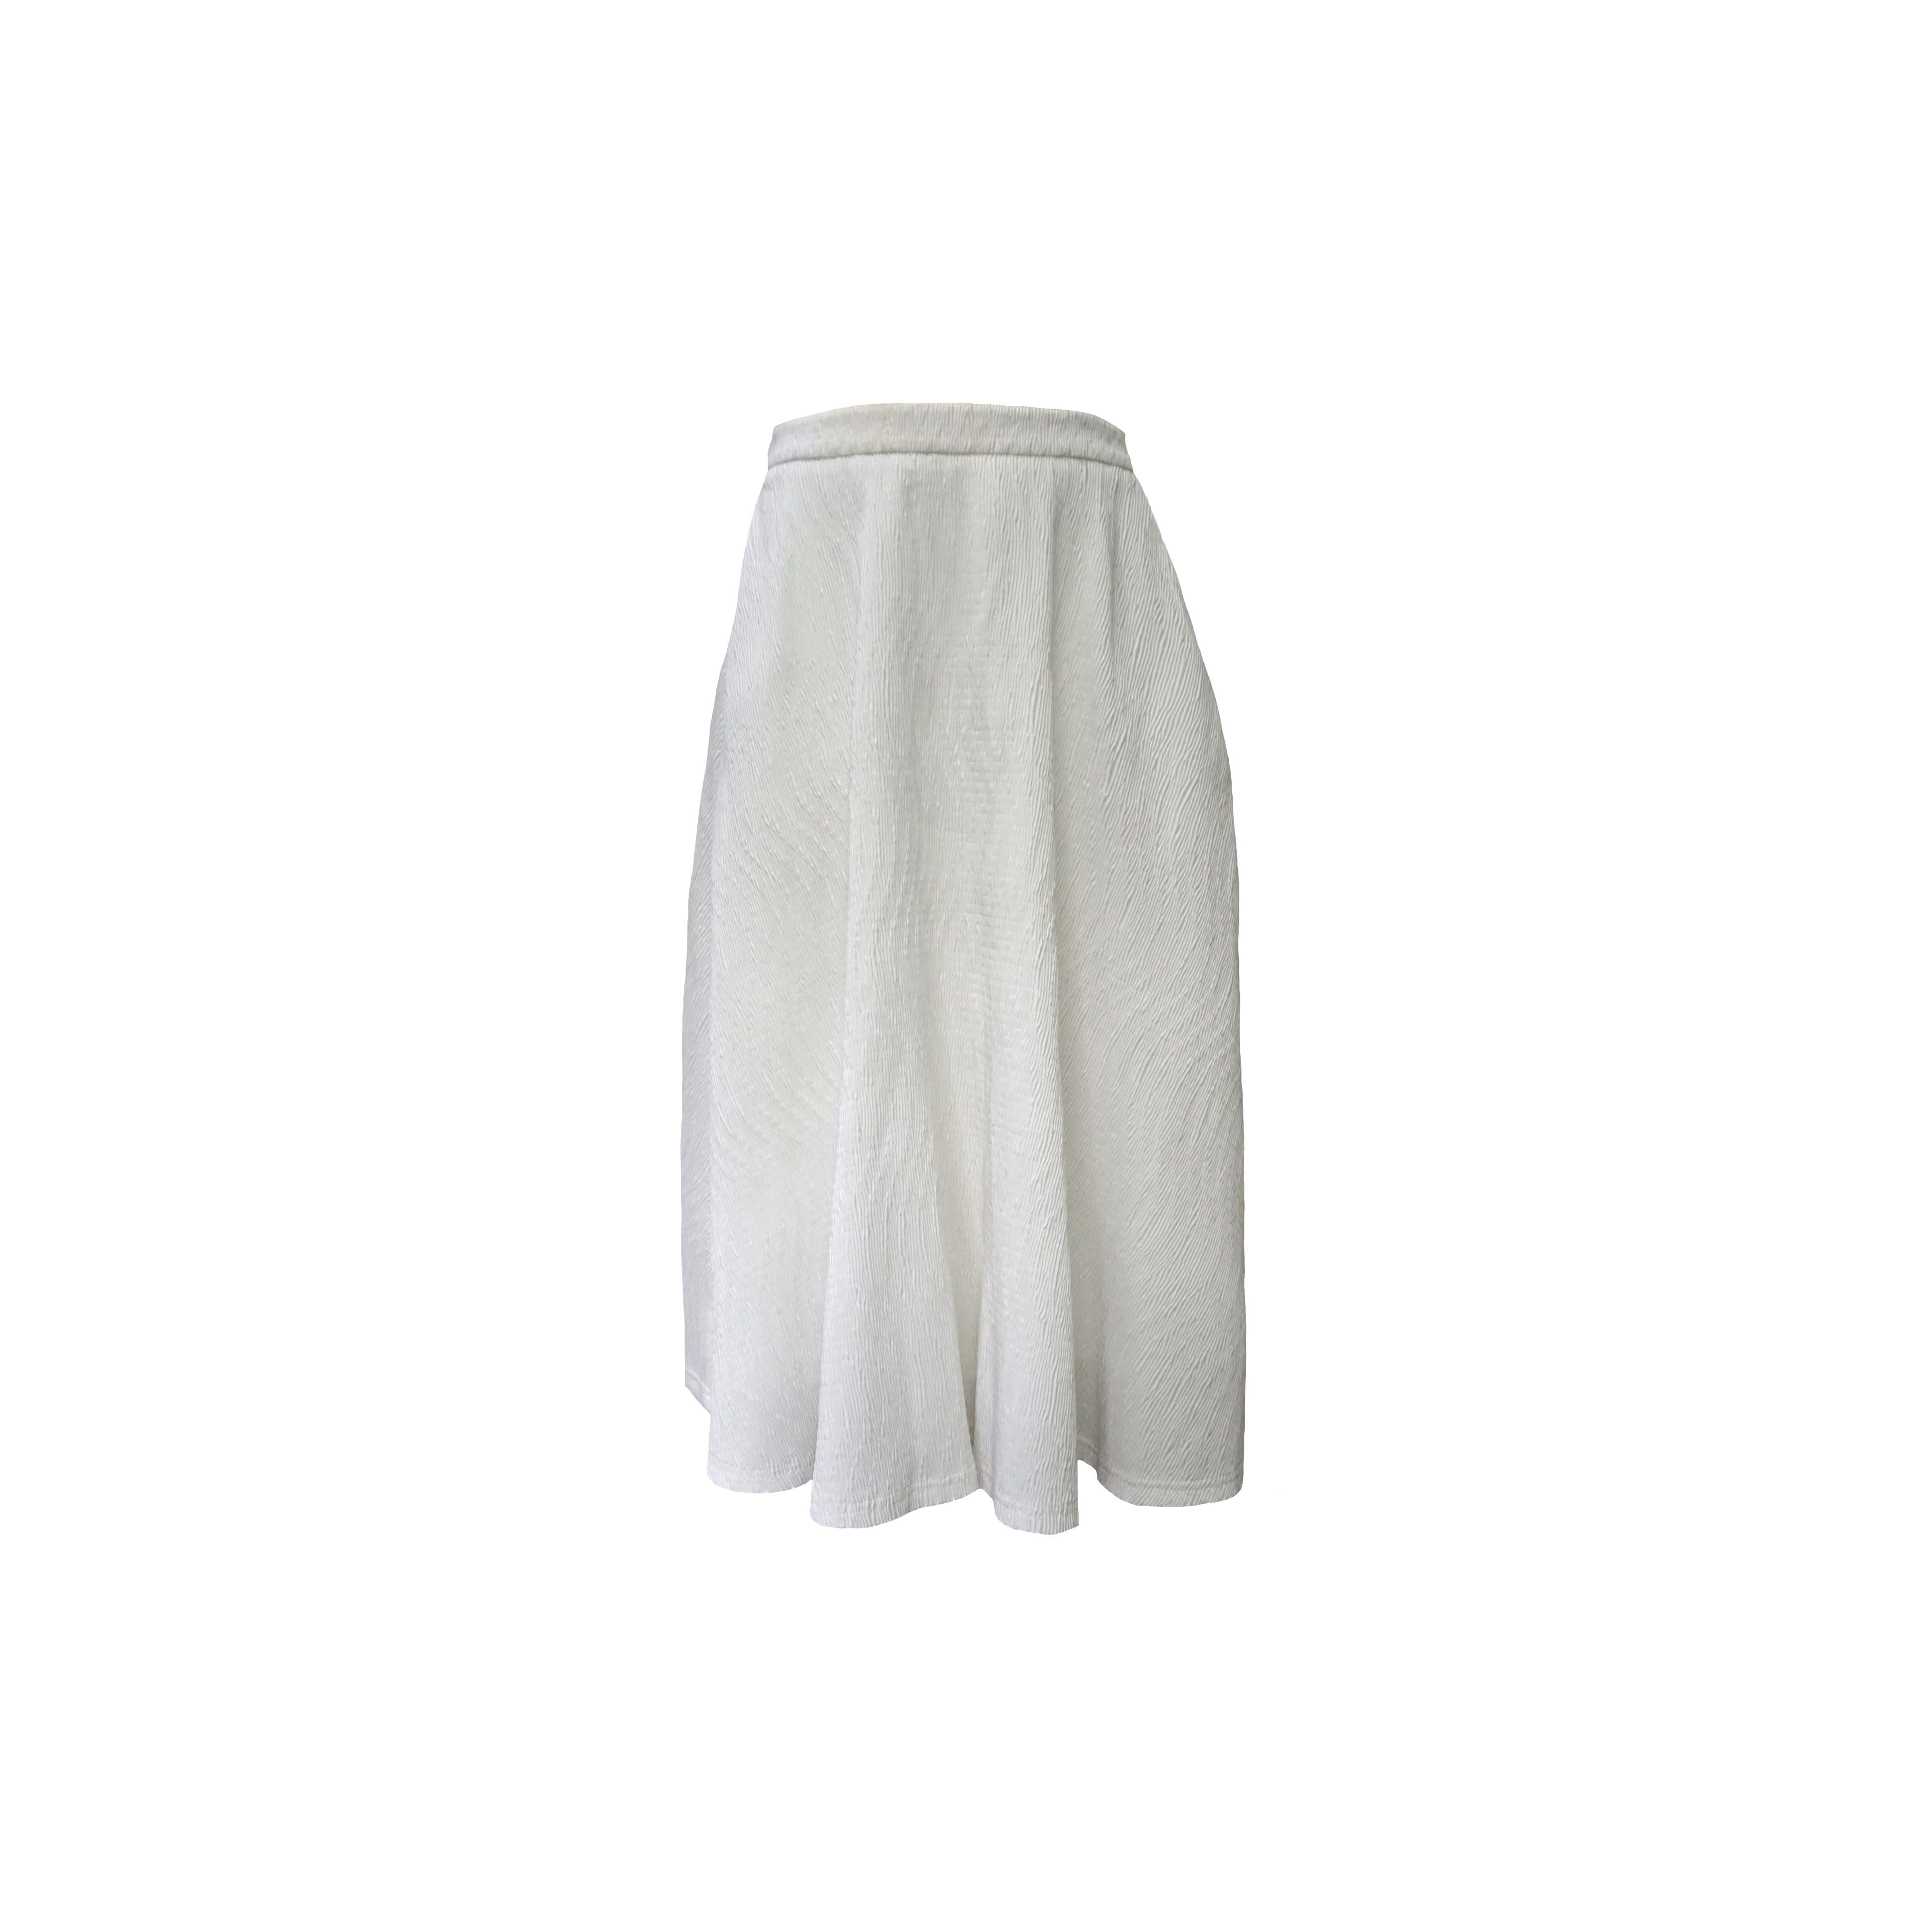 White Slip A-line Skirt